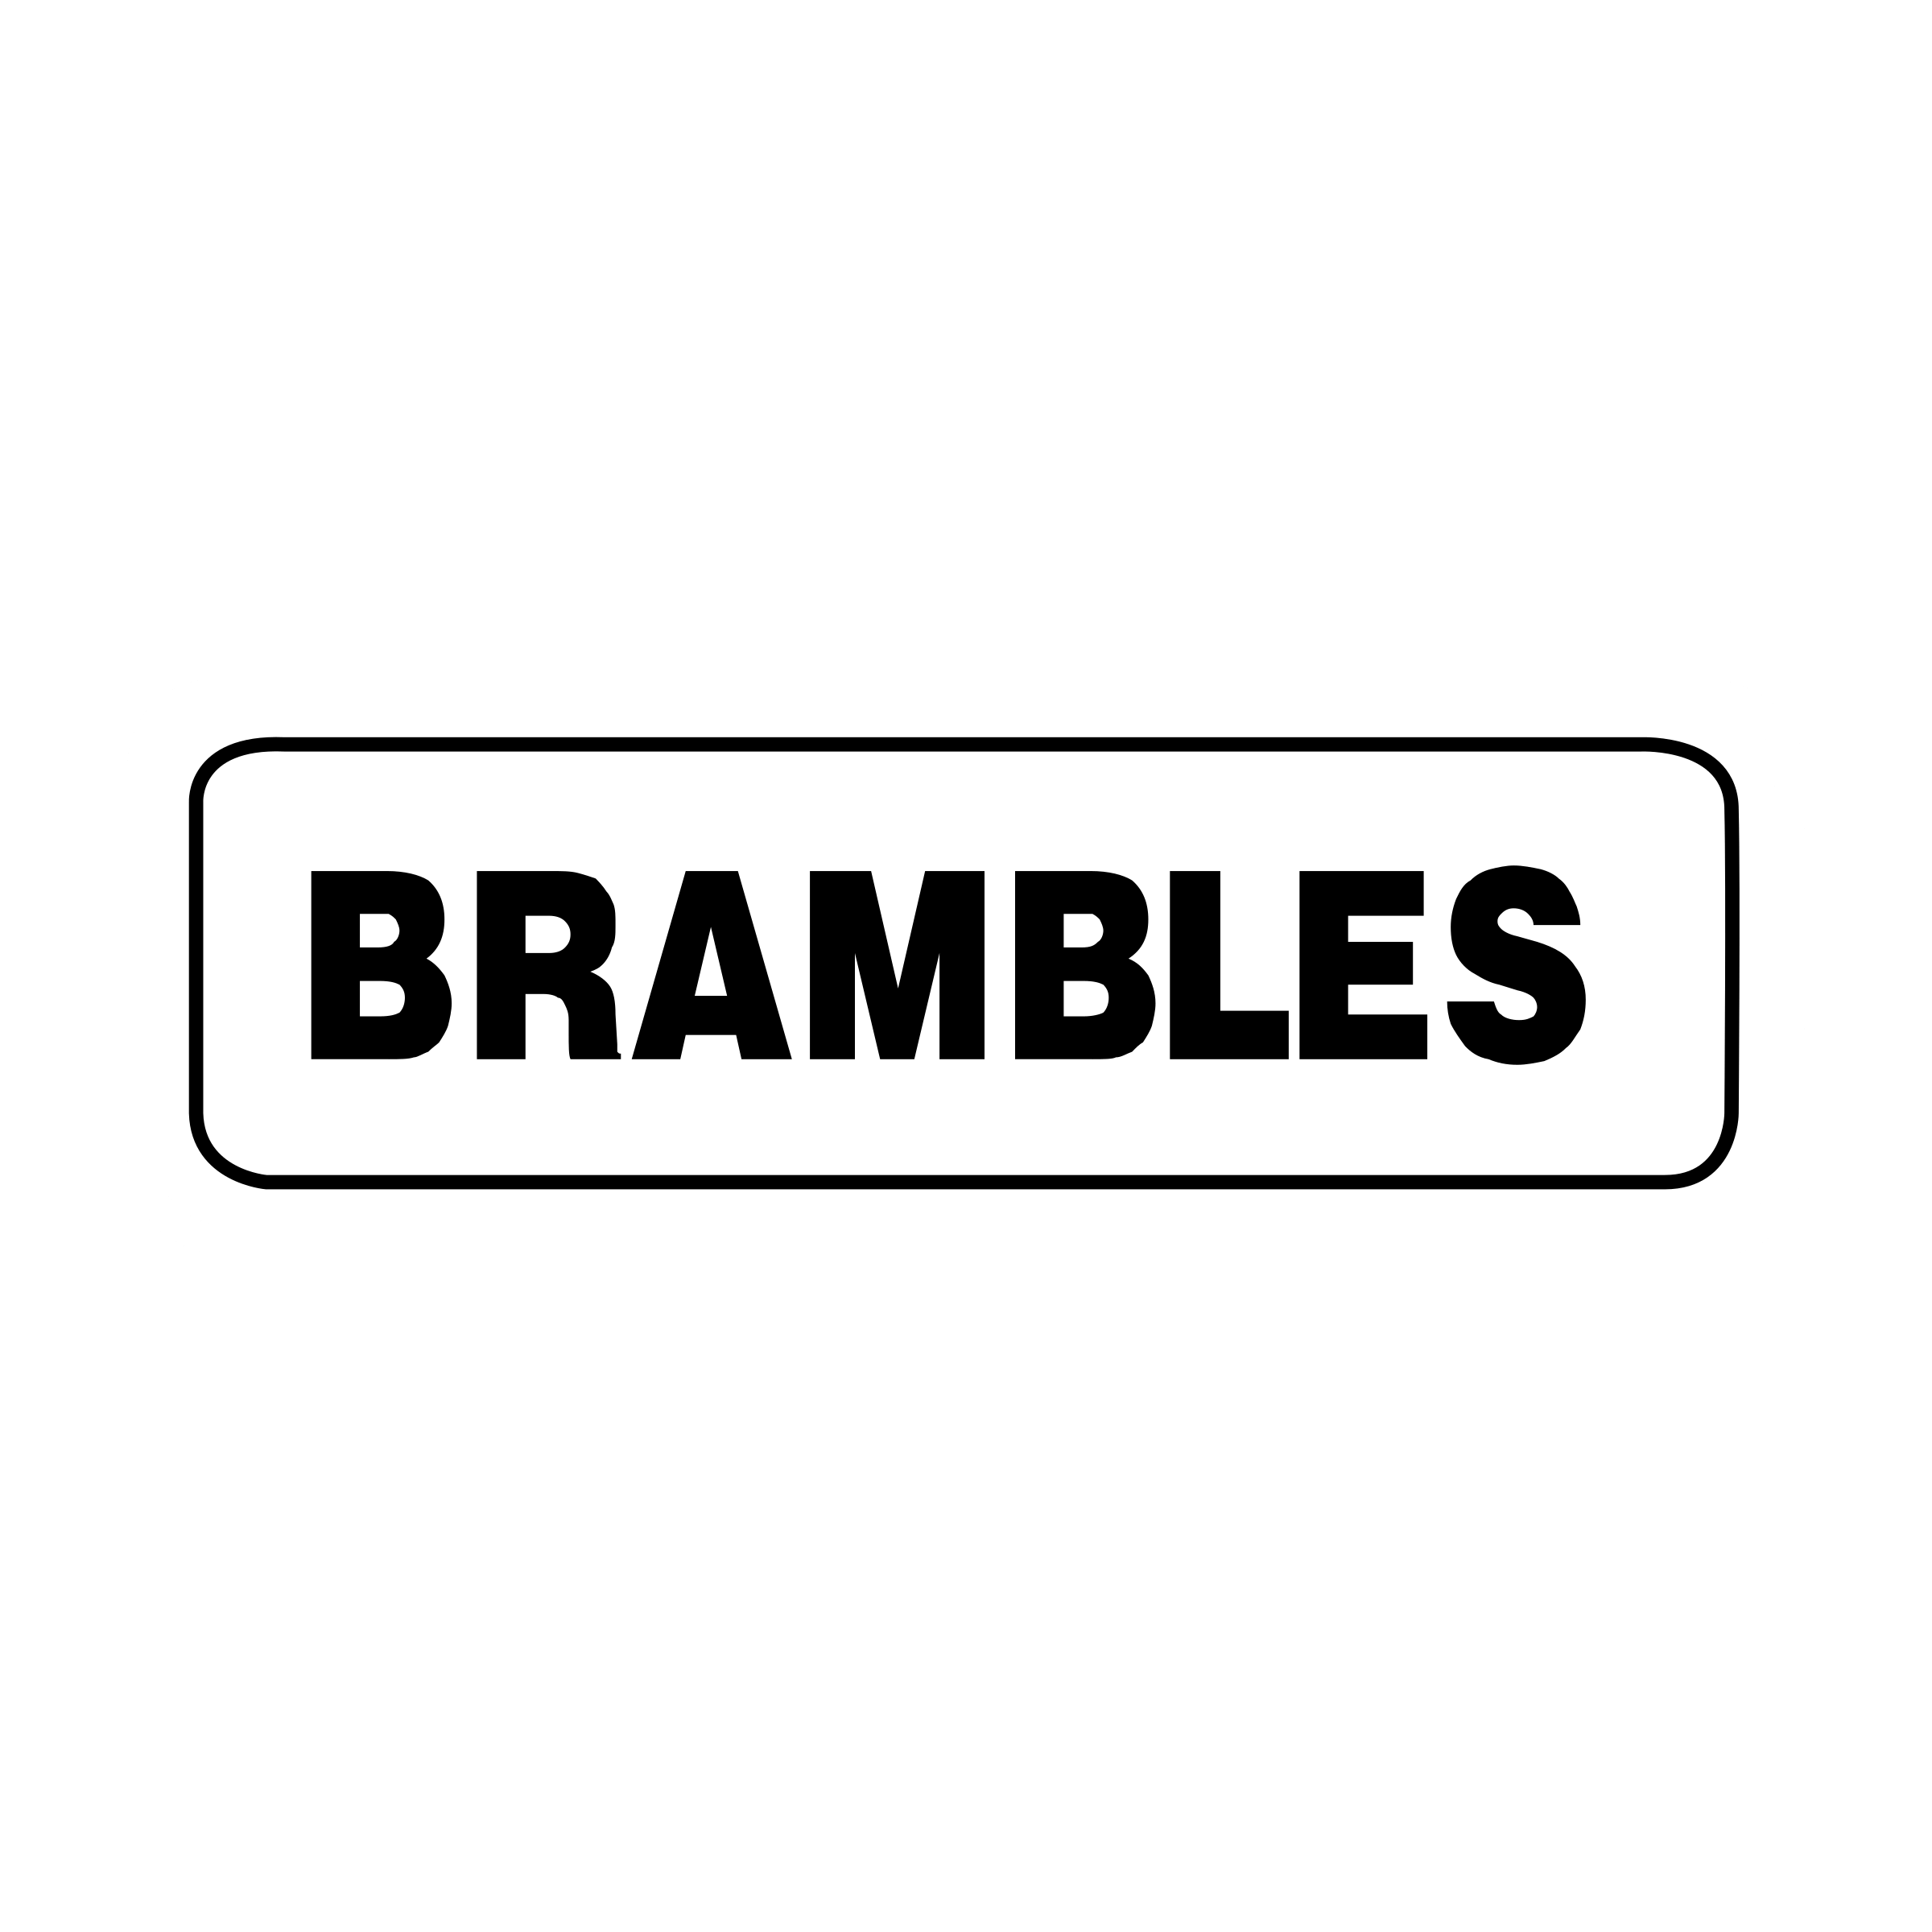 Brambles Logo - Brambles Logo PNG Transparent & SVG Vector